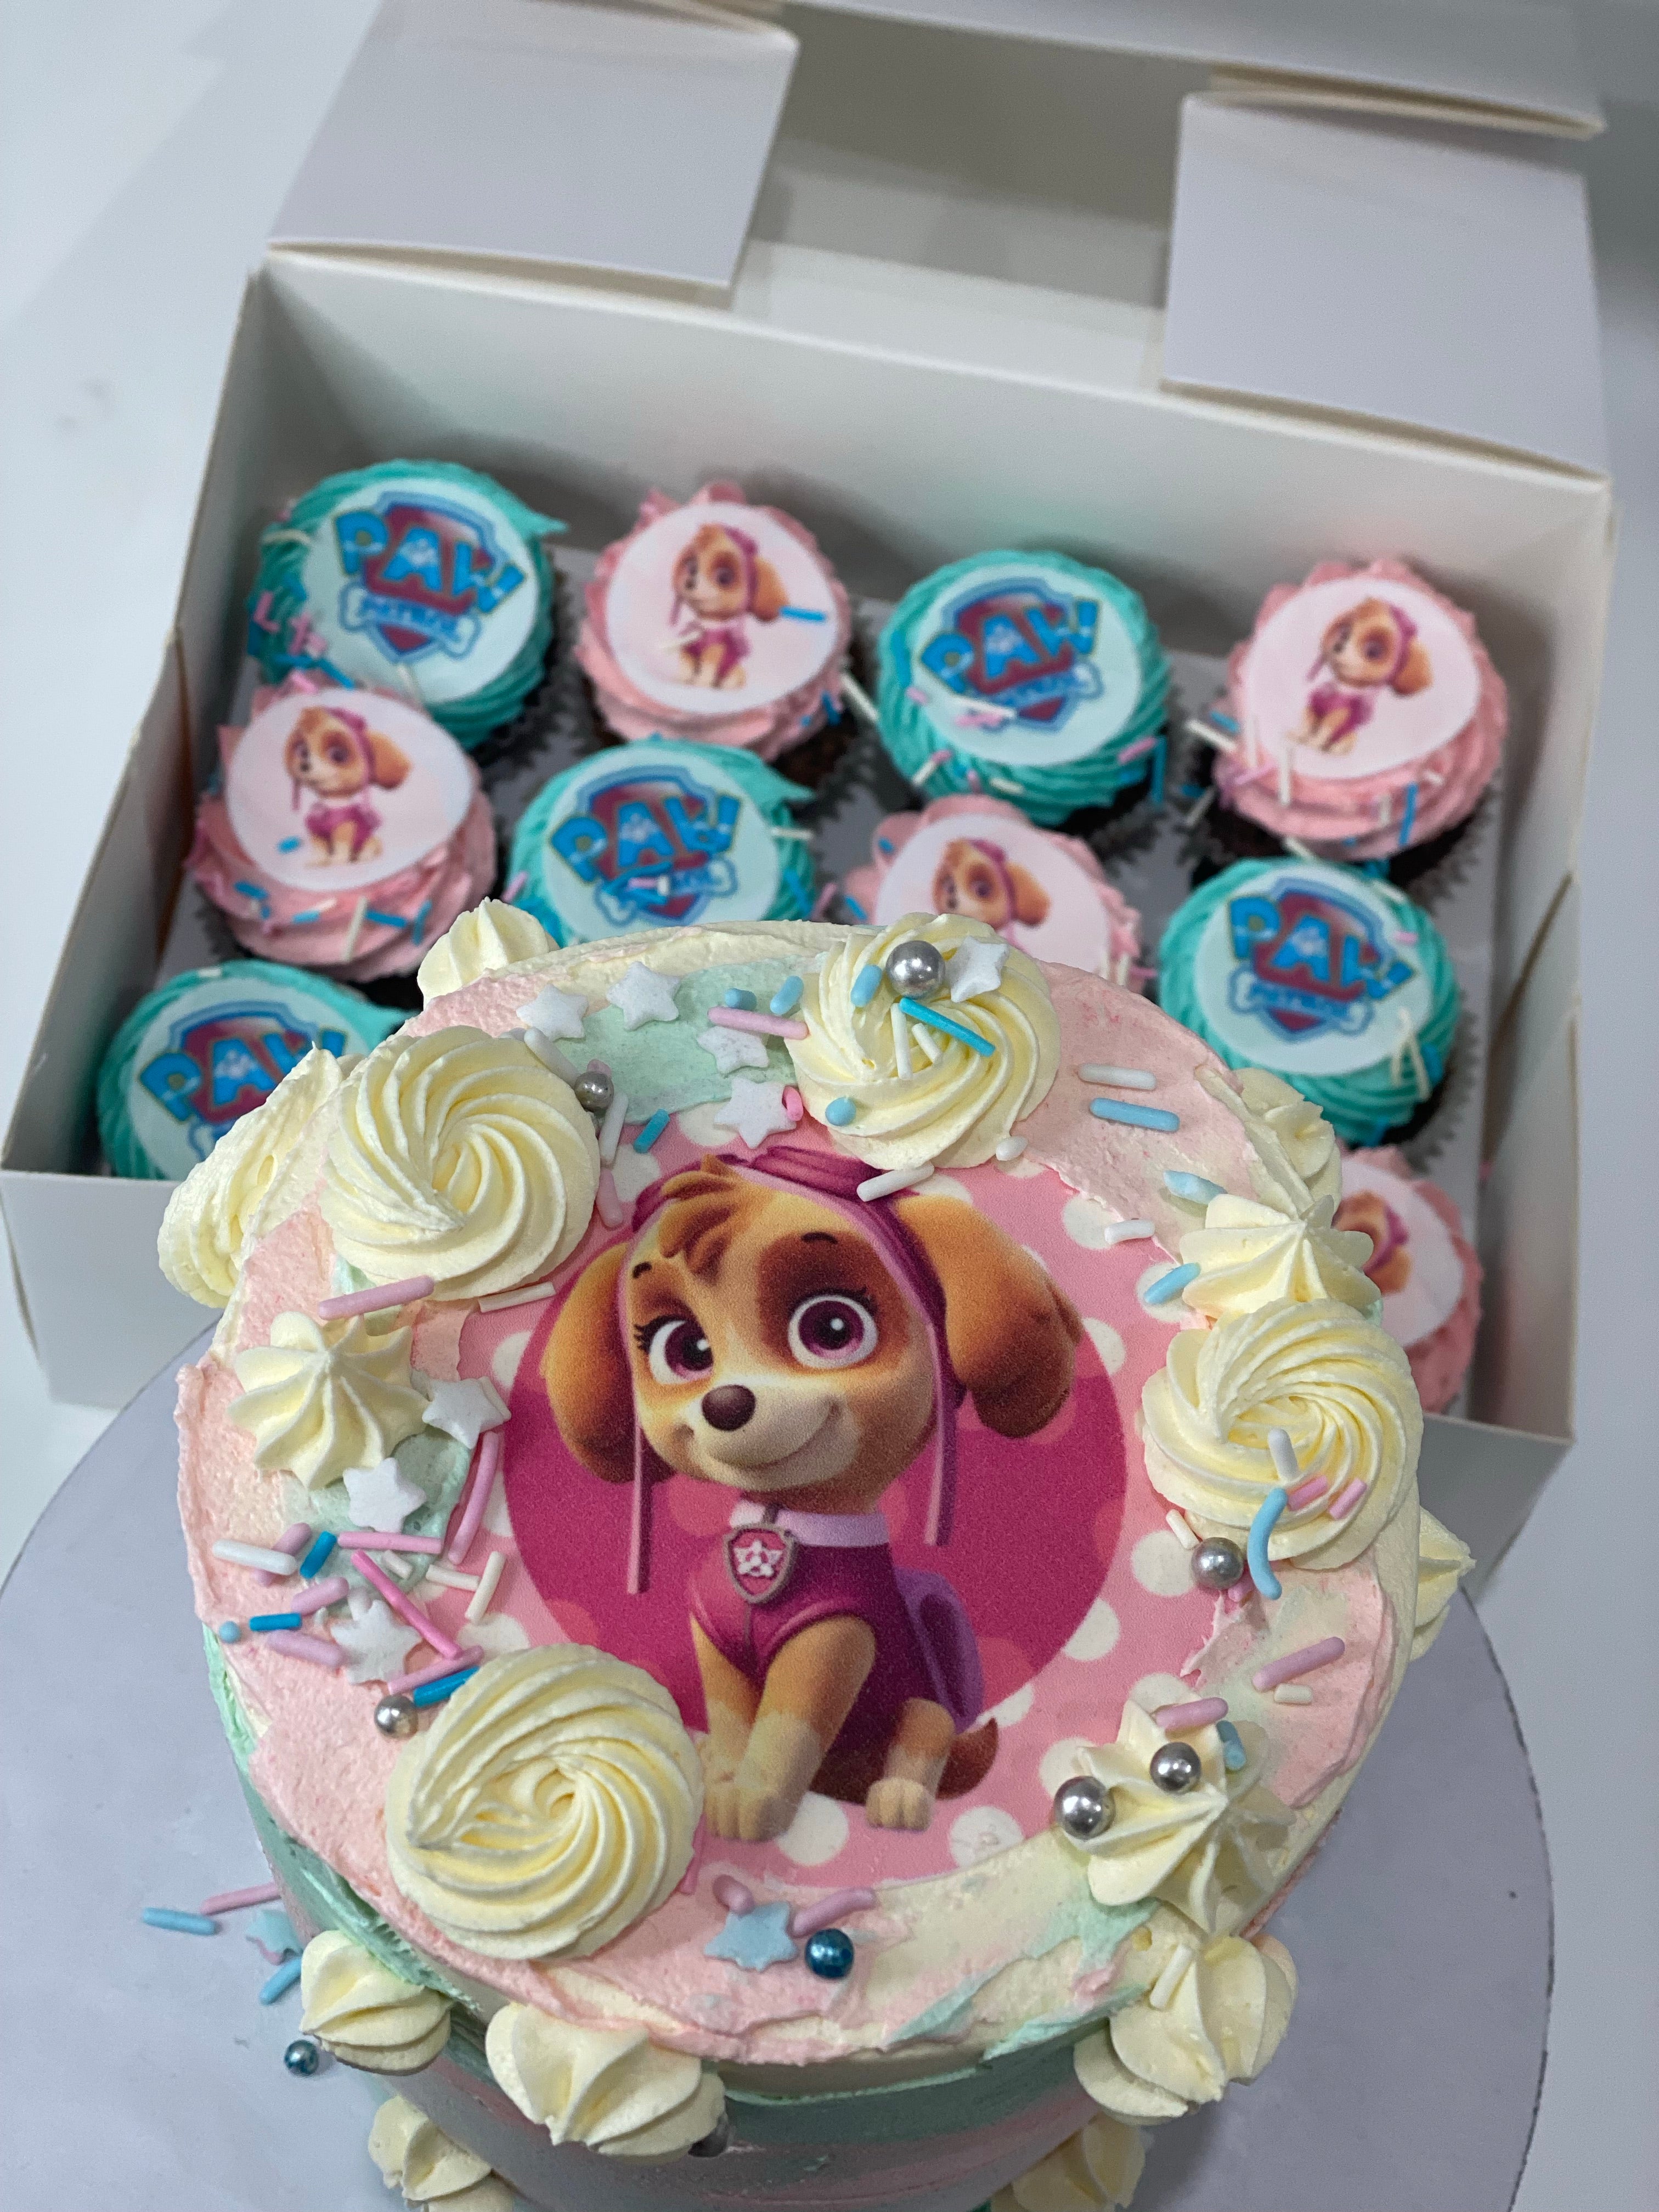 4” SKY paw patrol IMAGE CAKE +  cupcakes (12 mini )